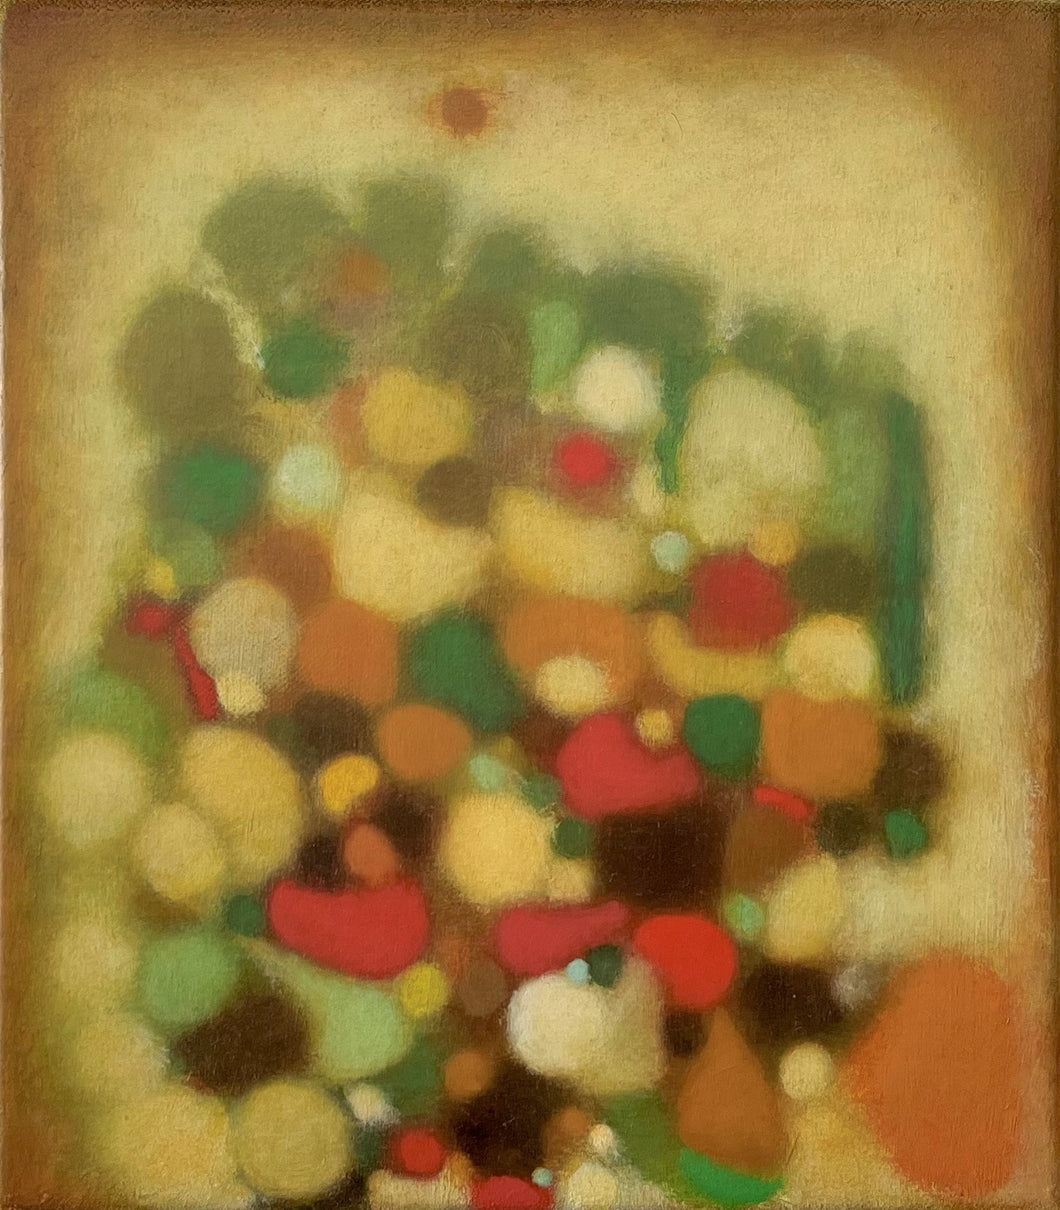 Jeff KOWATCH, Sant Eustachio, Huile sur lin, 25 x 23 cm, 2022